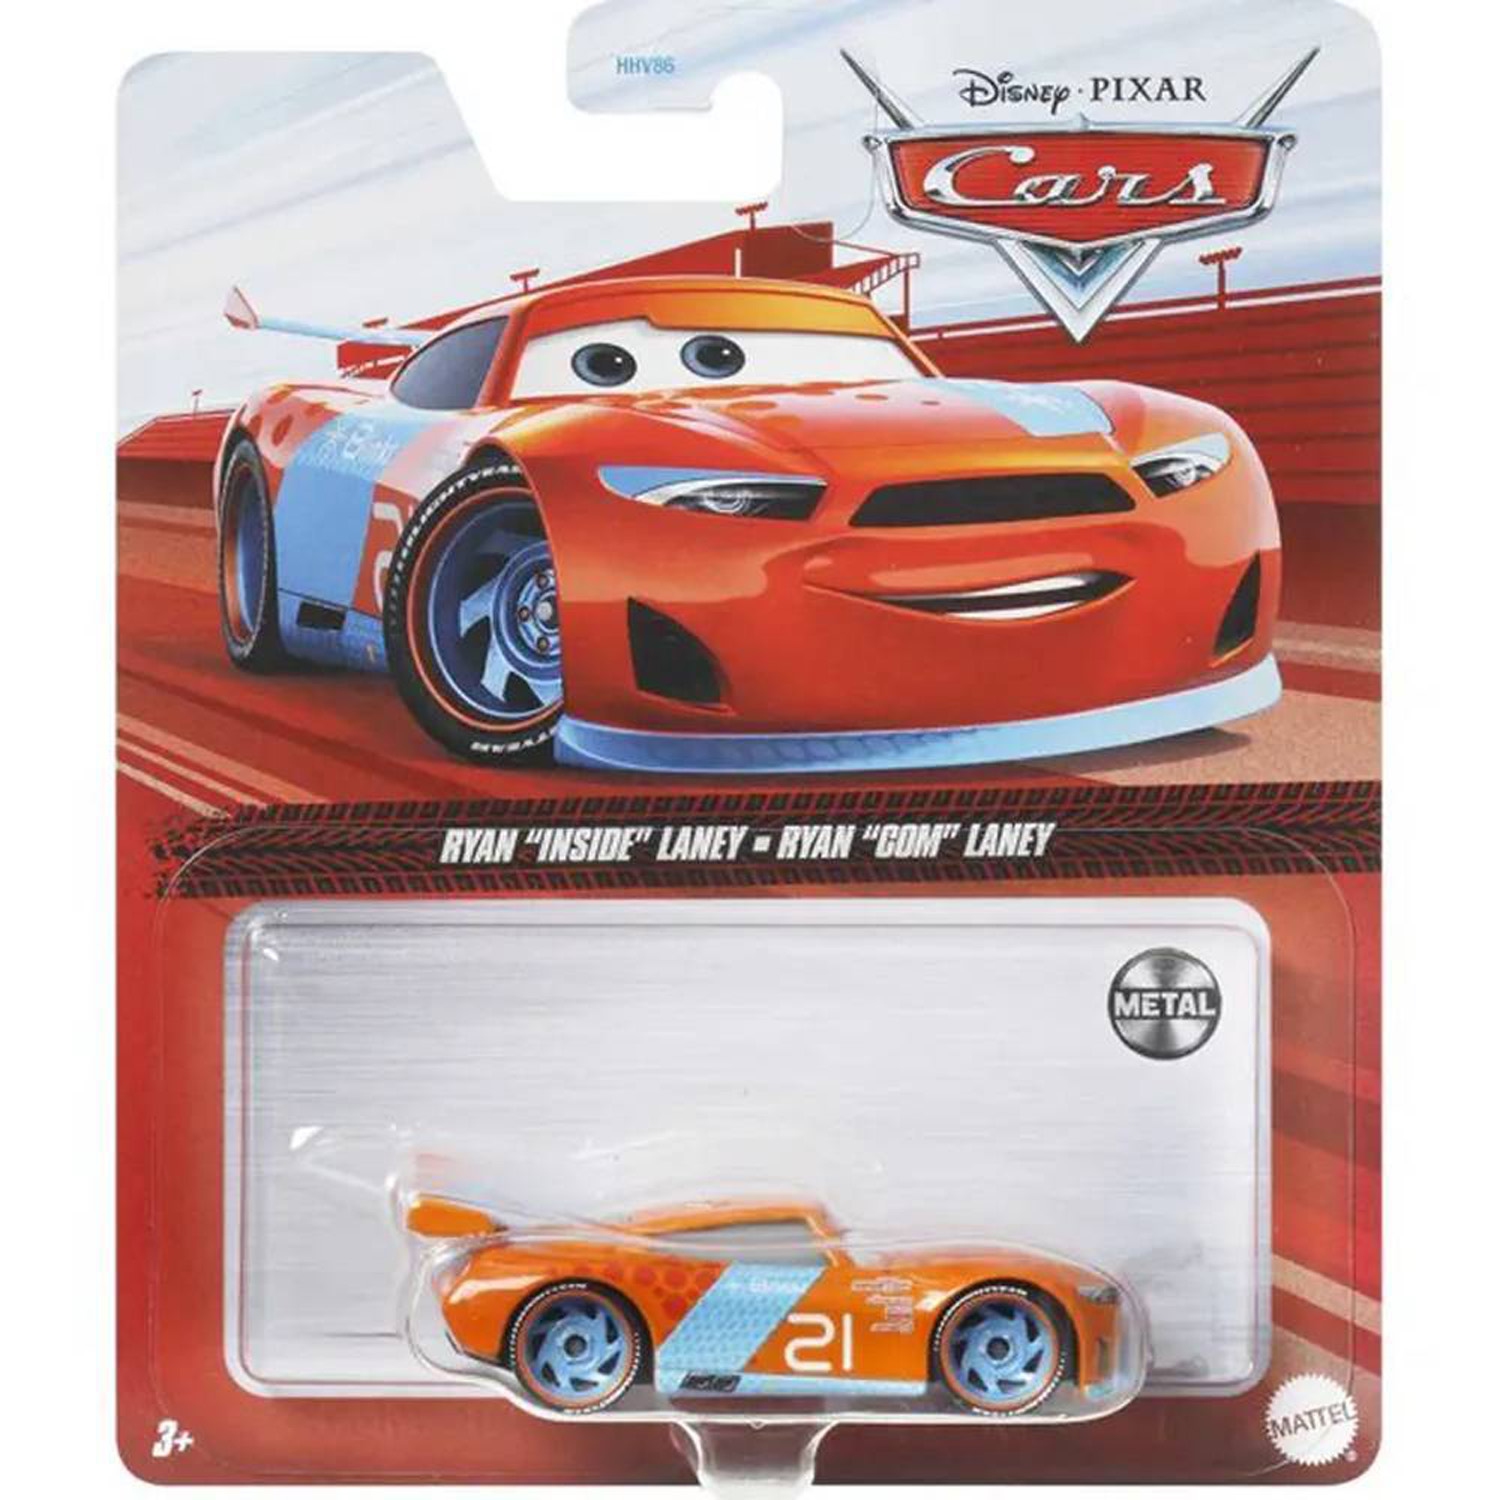 Disney Pixar Cars 1:55 Scale Die-cast Ryan "Inside" Laney